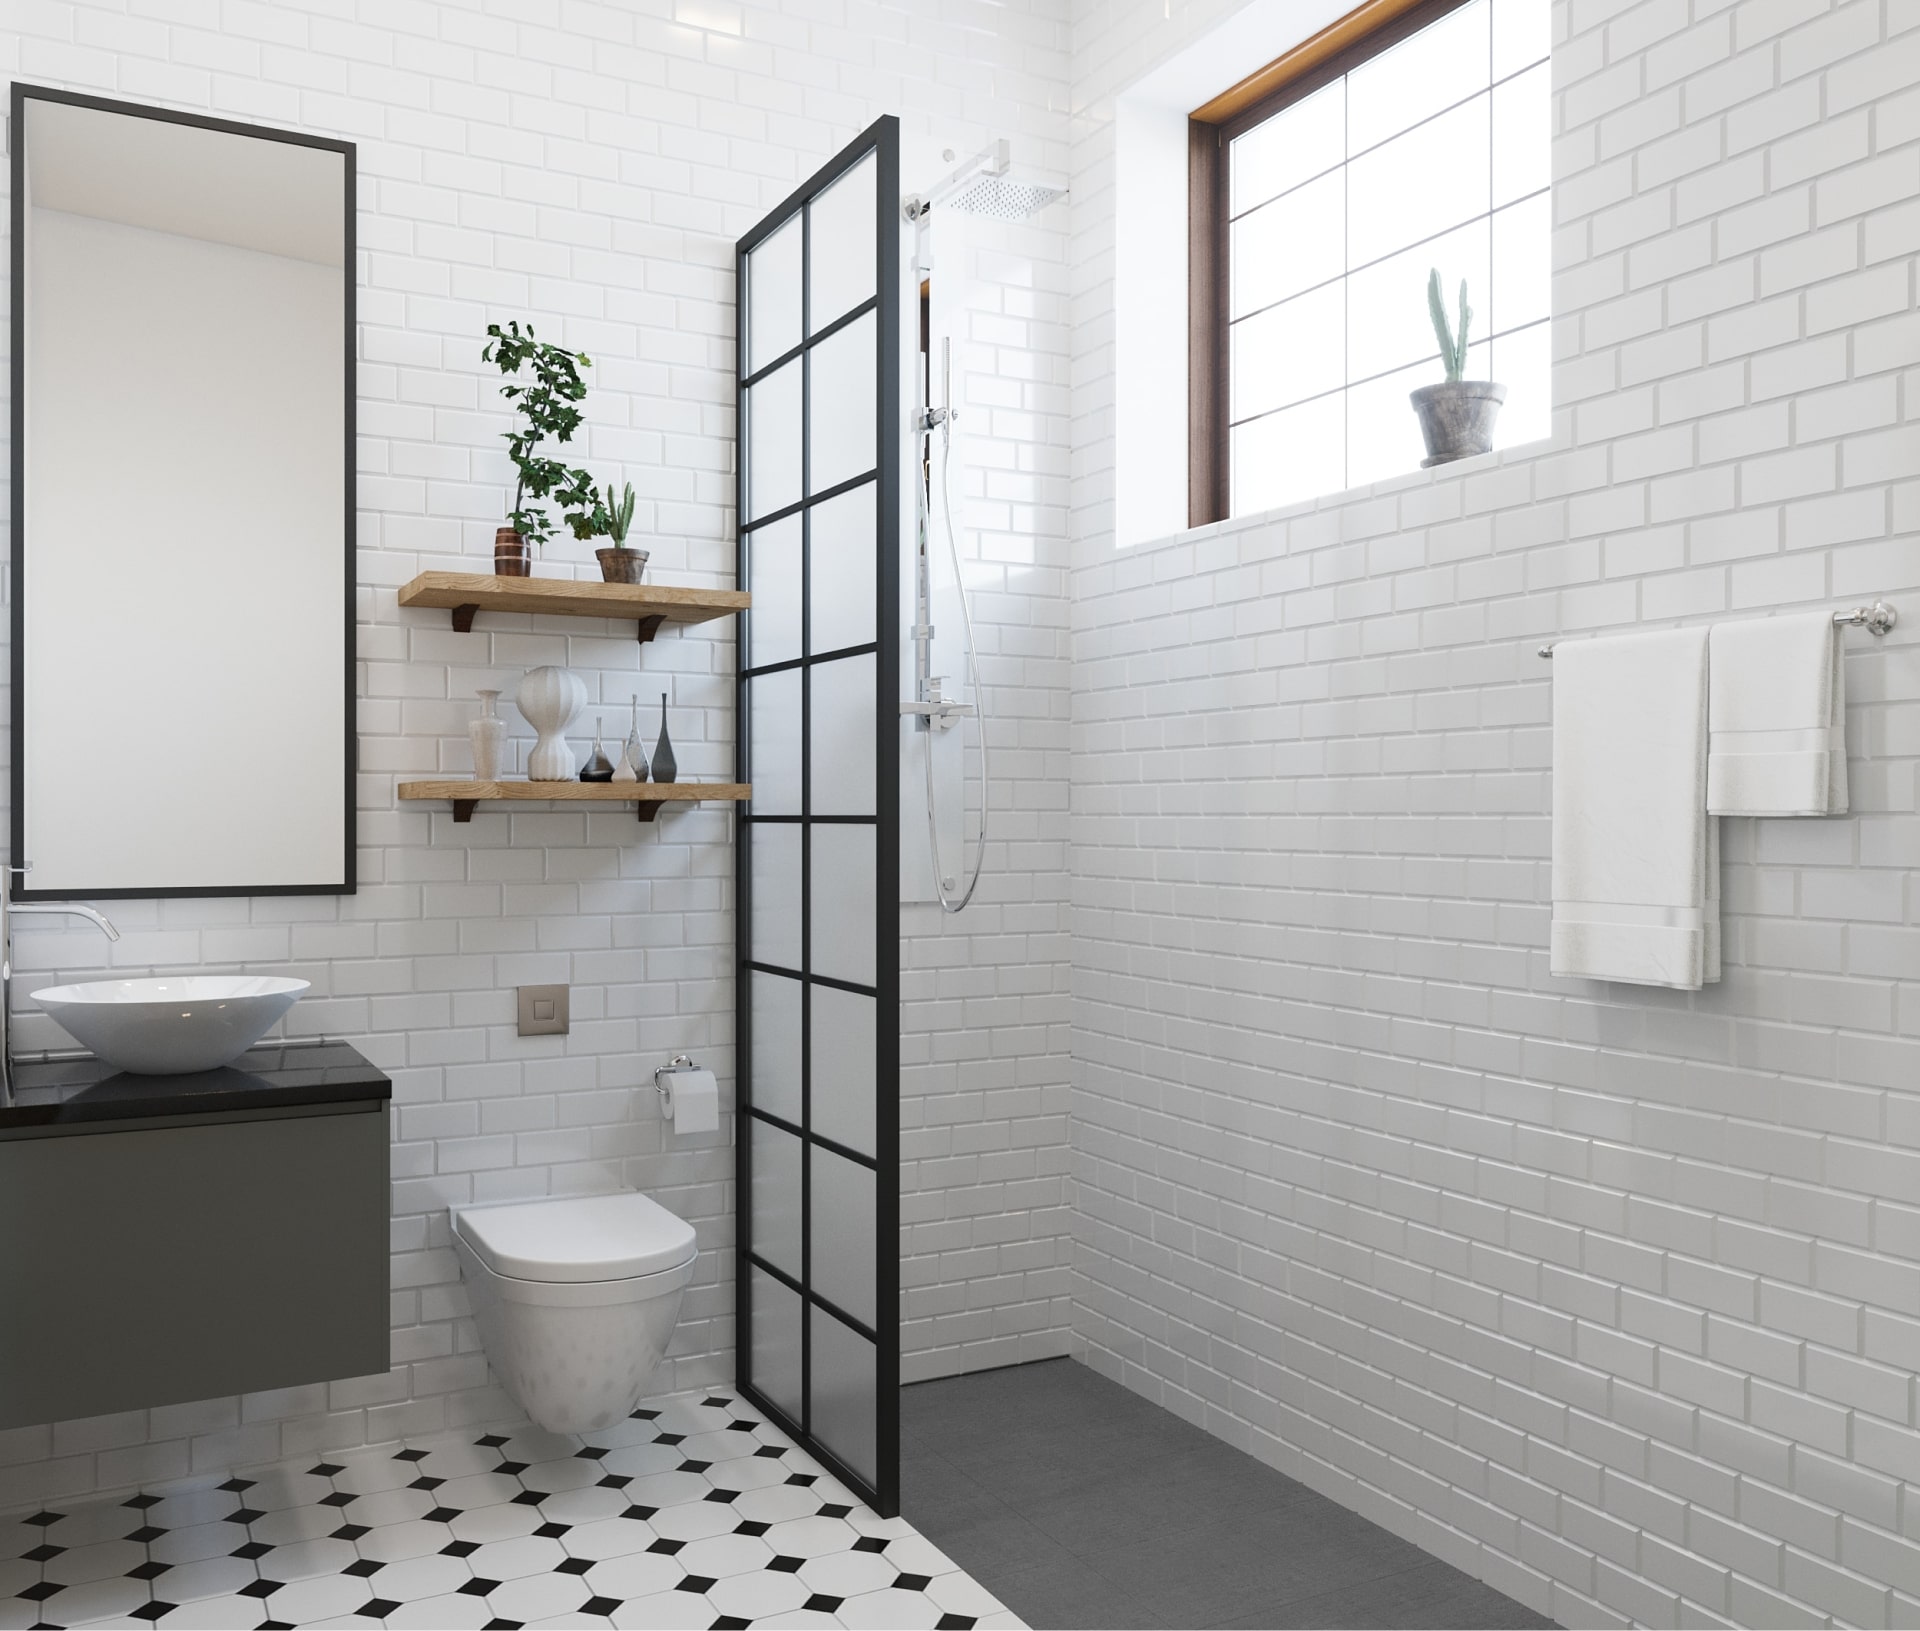 Imagen de un cuarto de baño moderno y práctico